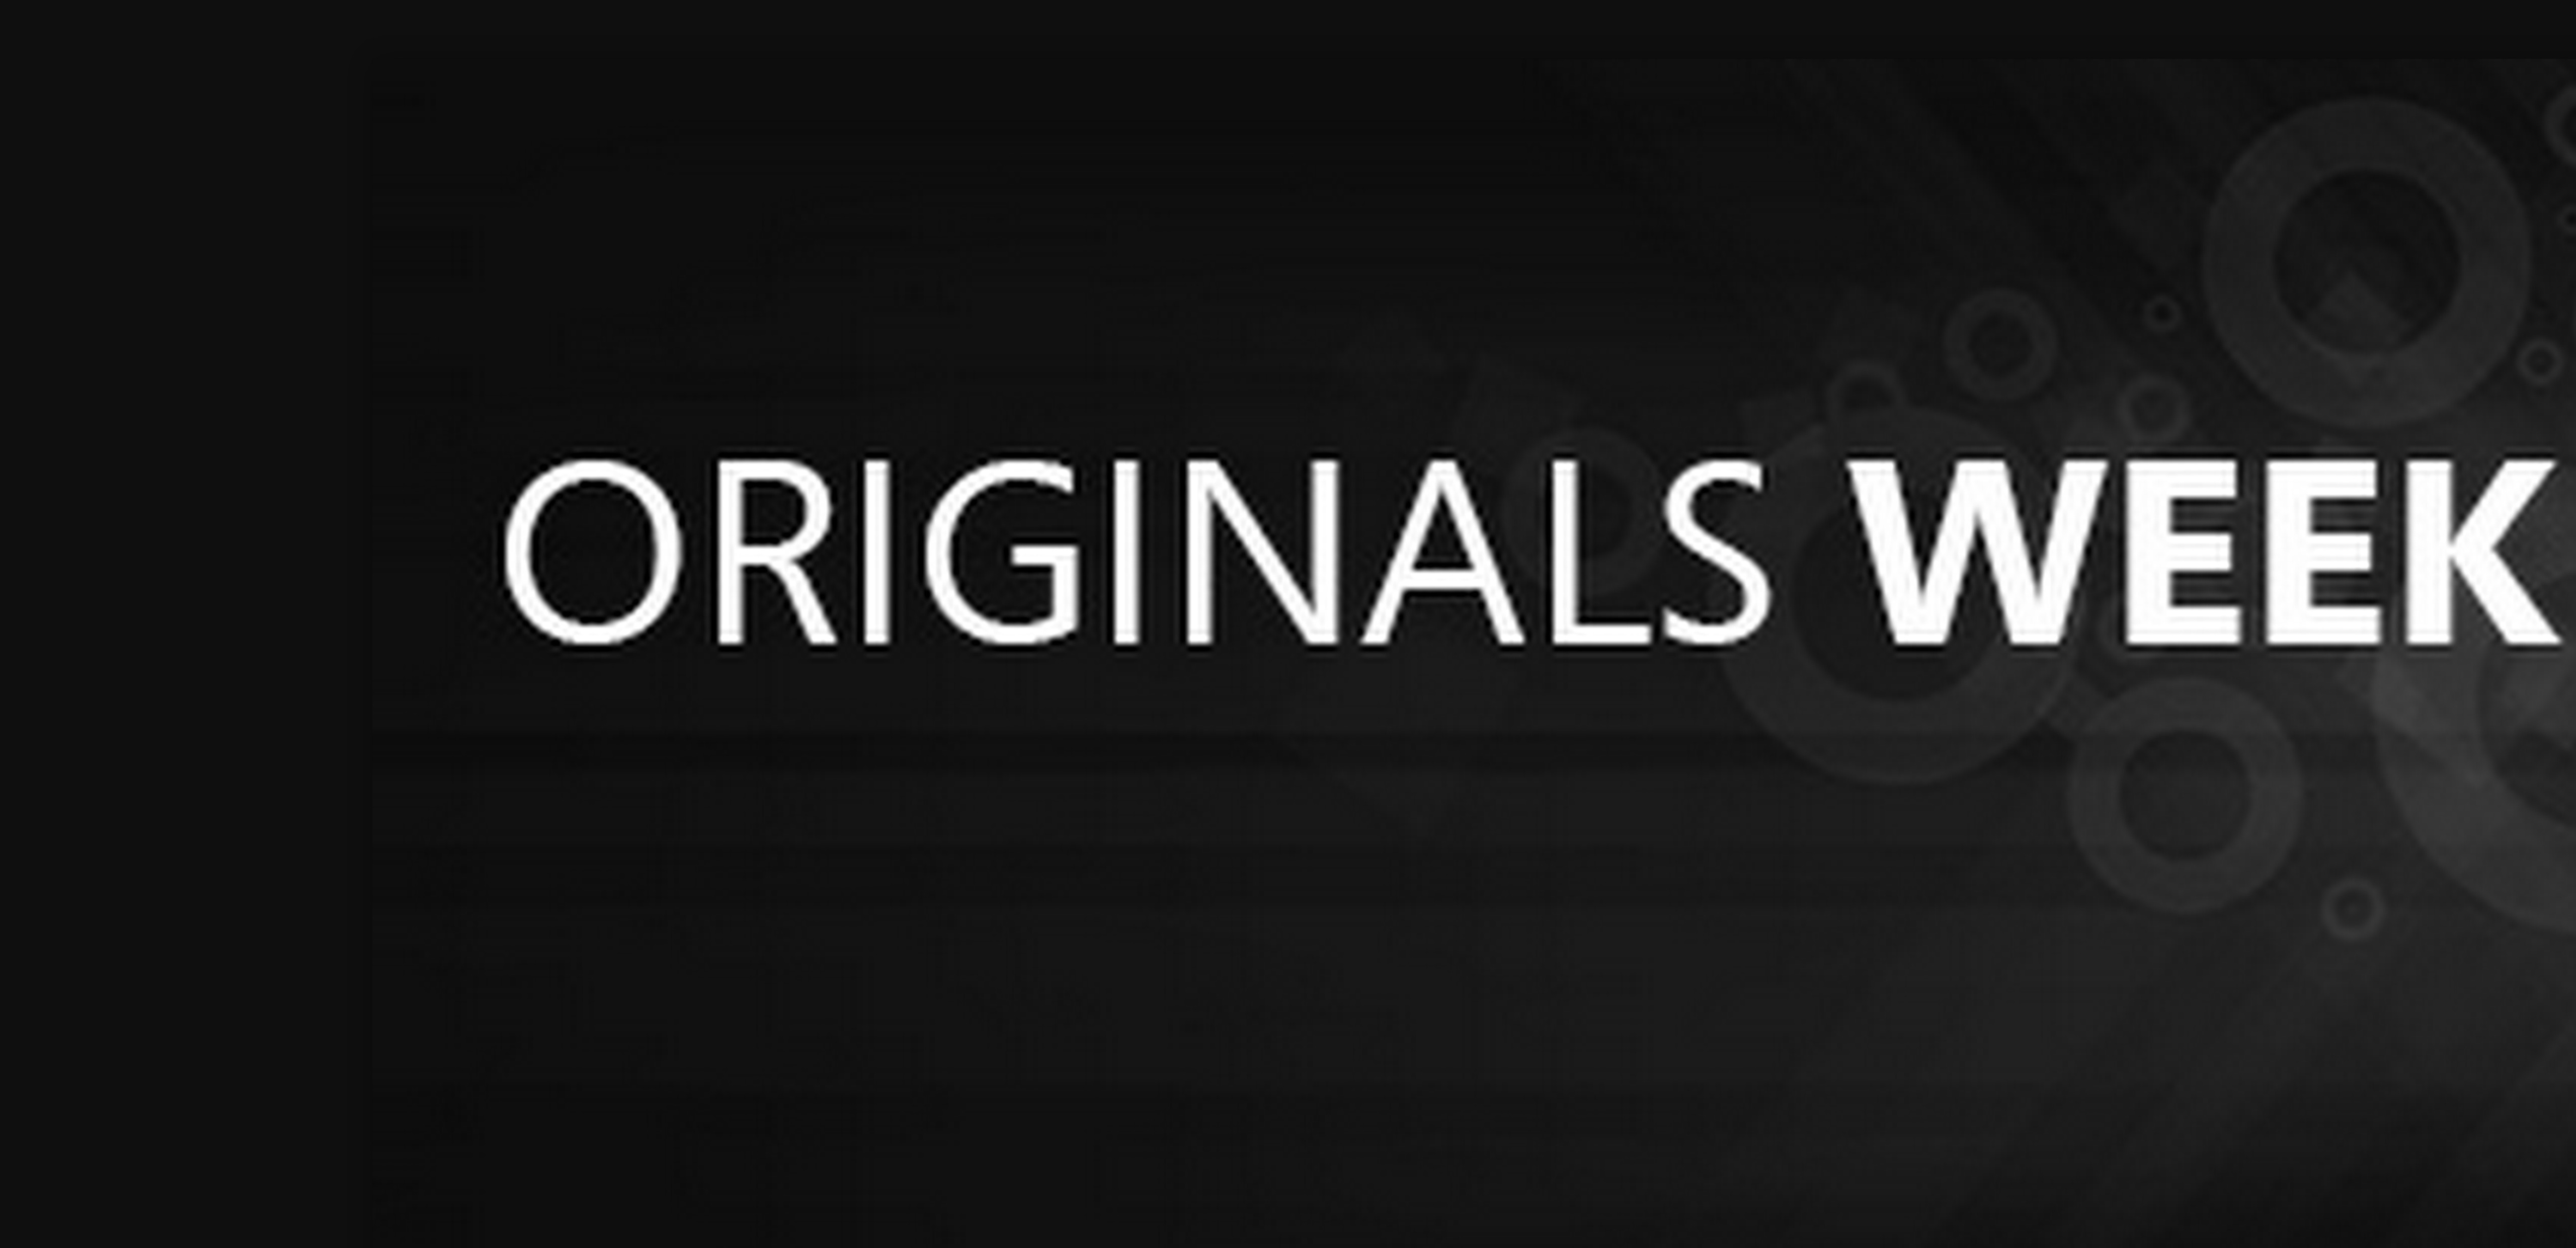 It's Originals Week in the Windows Store!